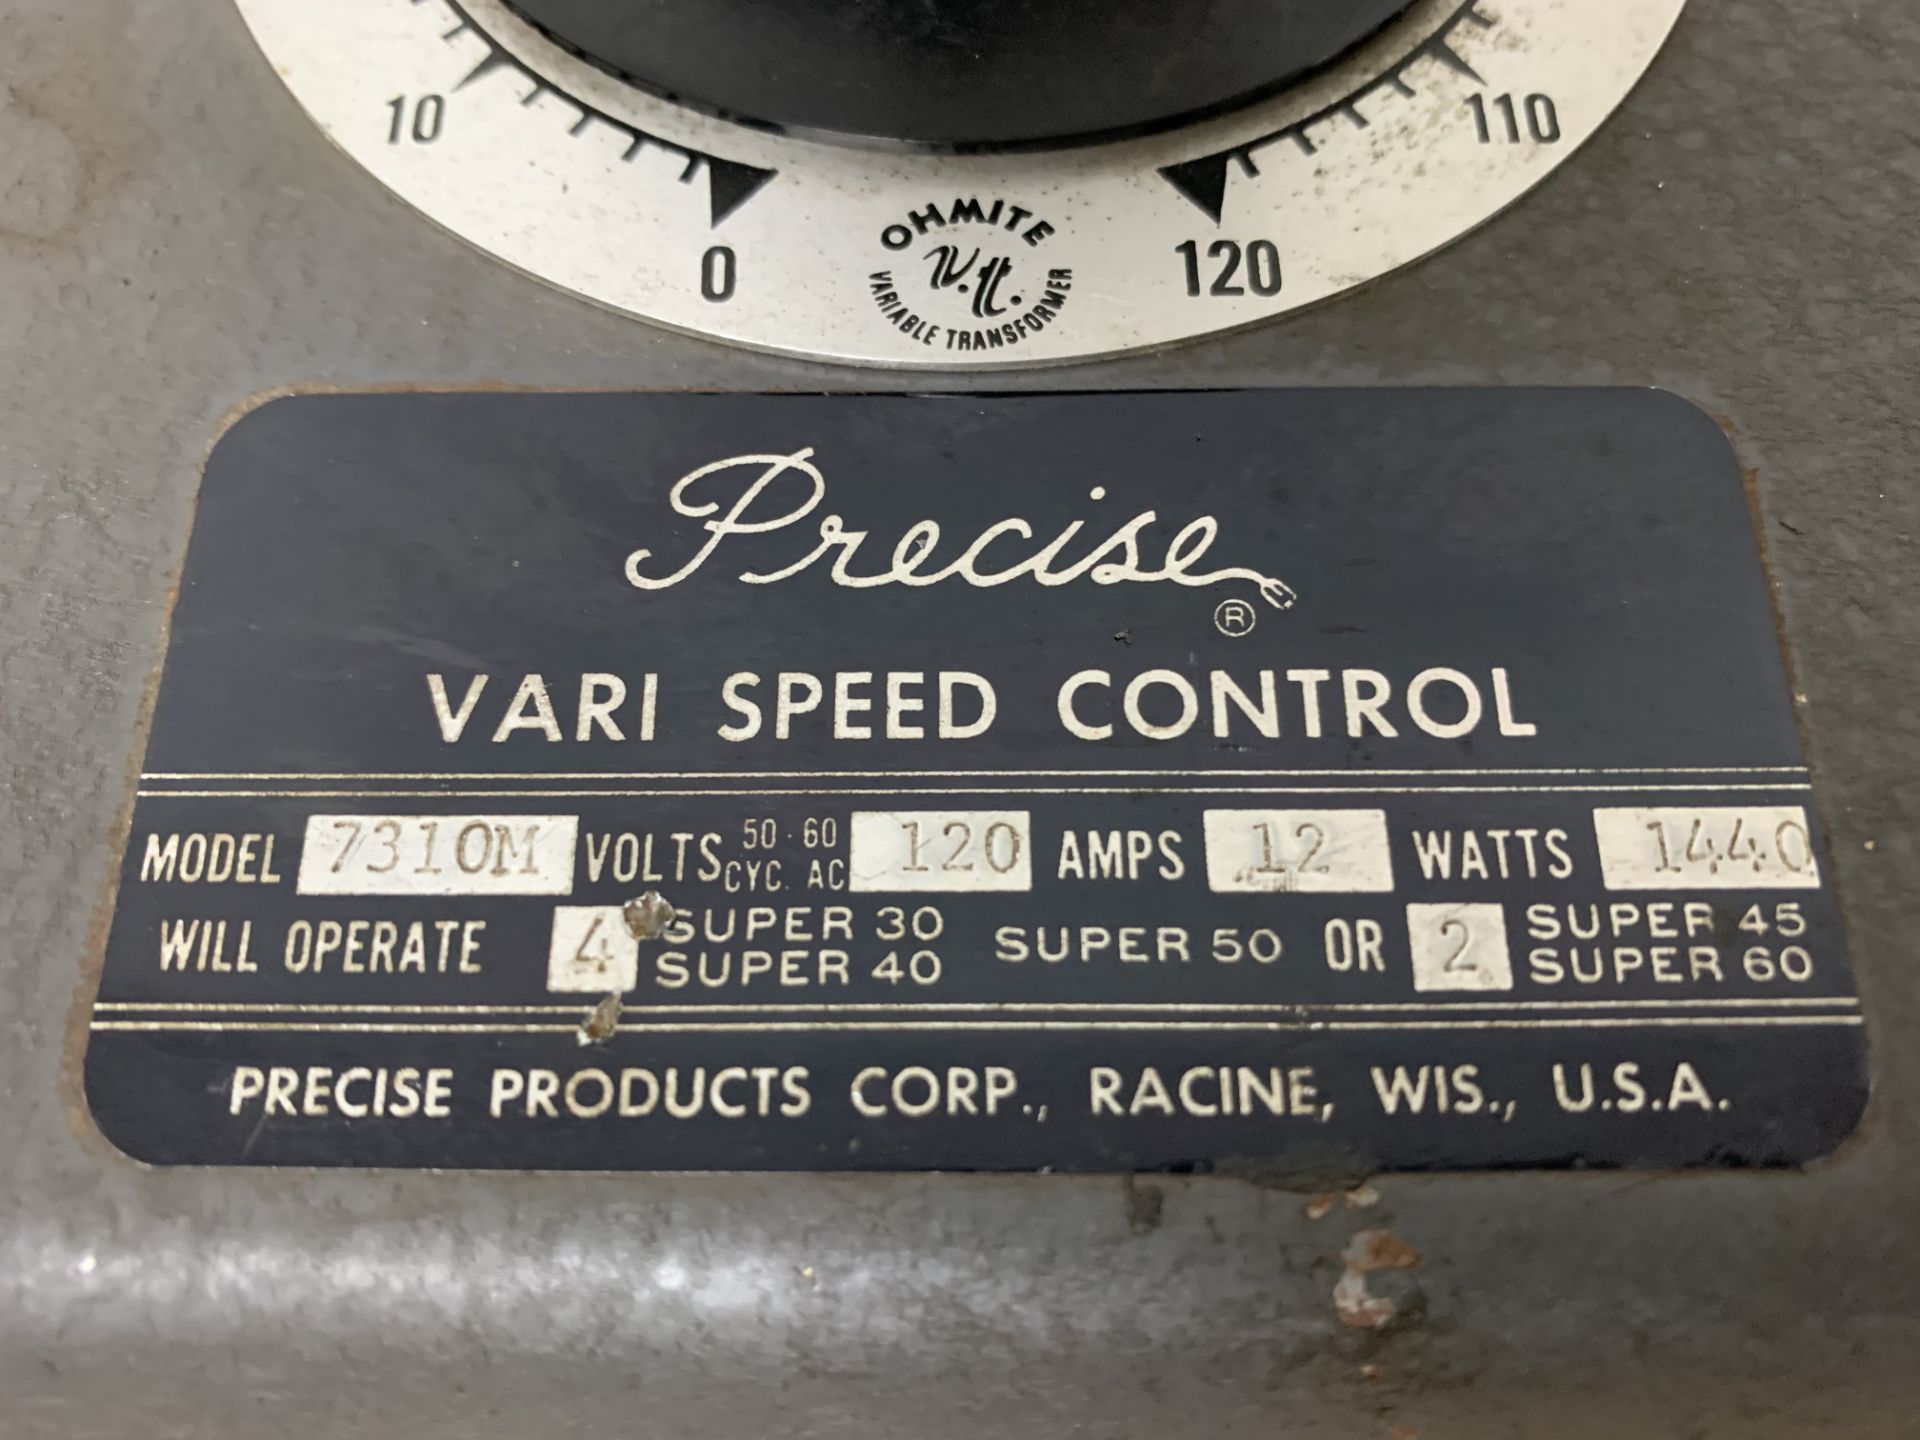 Precise Vari Speed Control Unit Model 7310M - Image 2 of 2